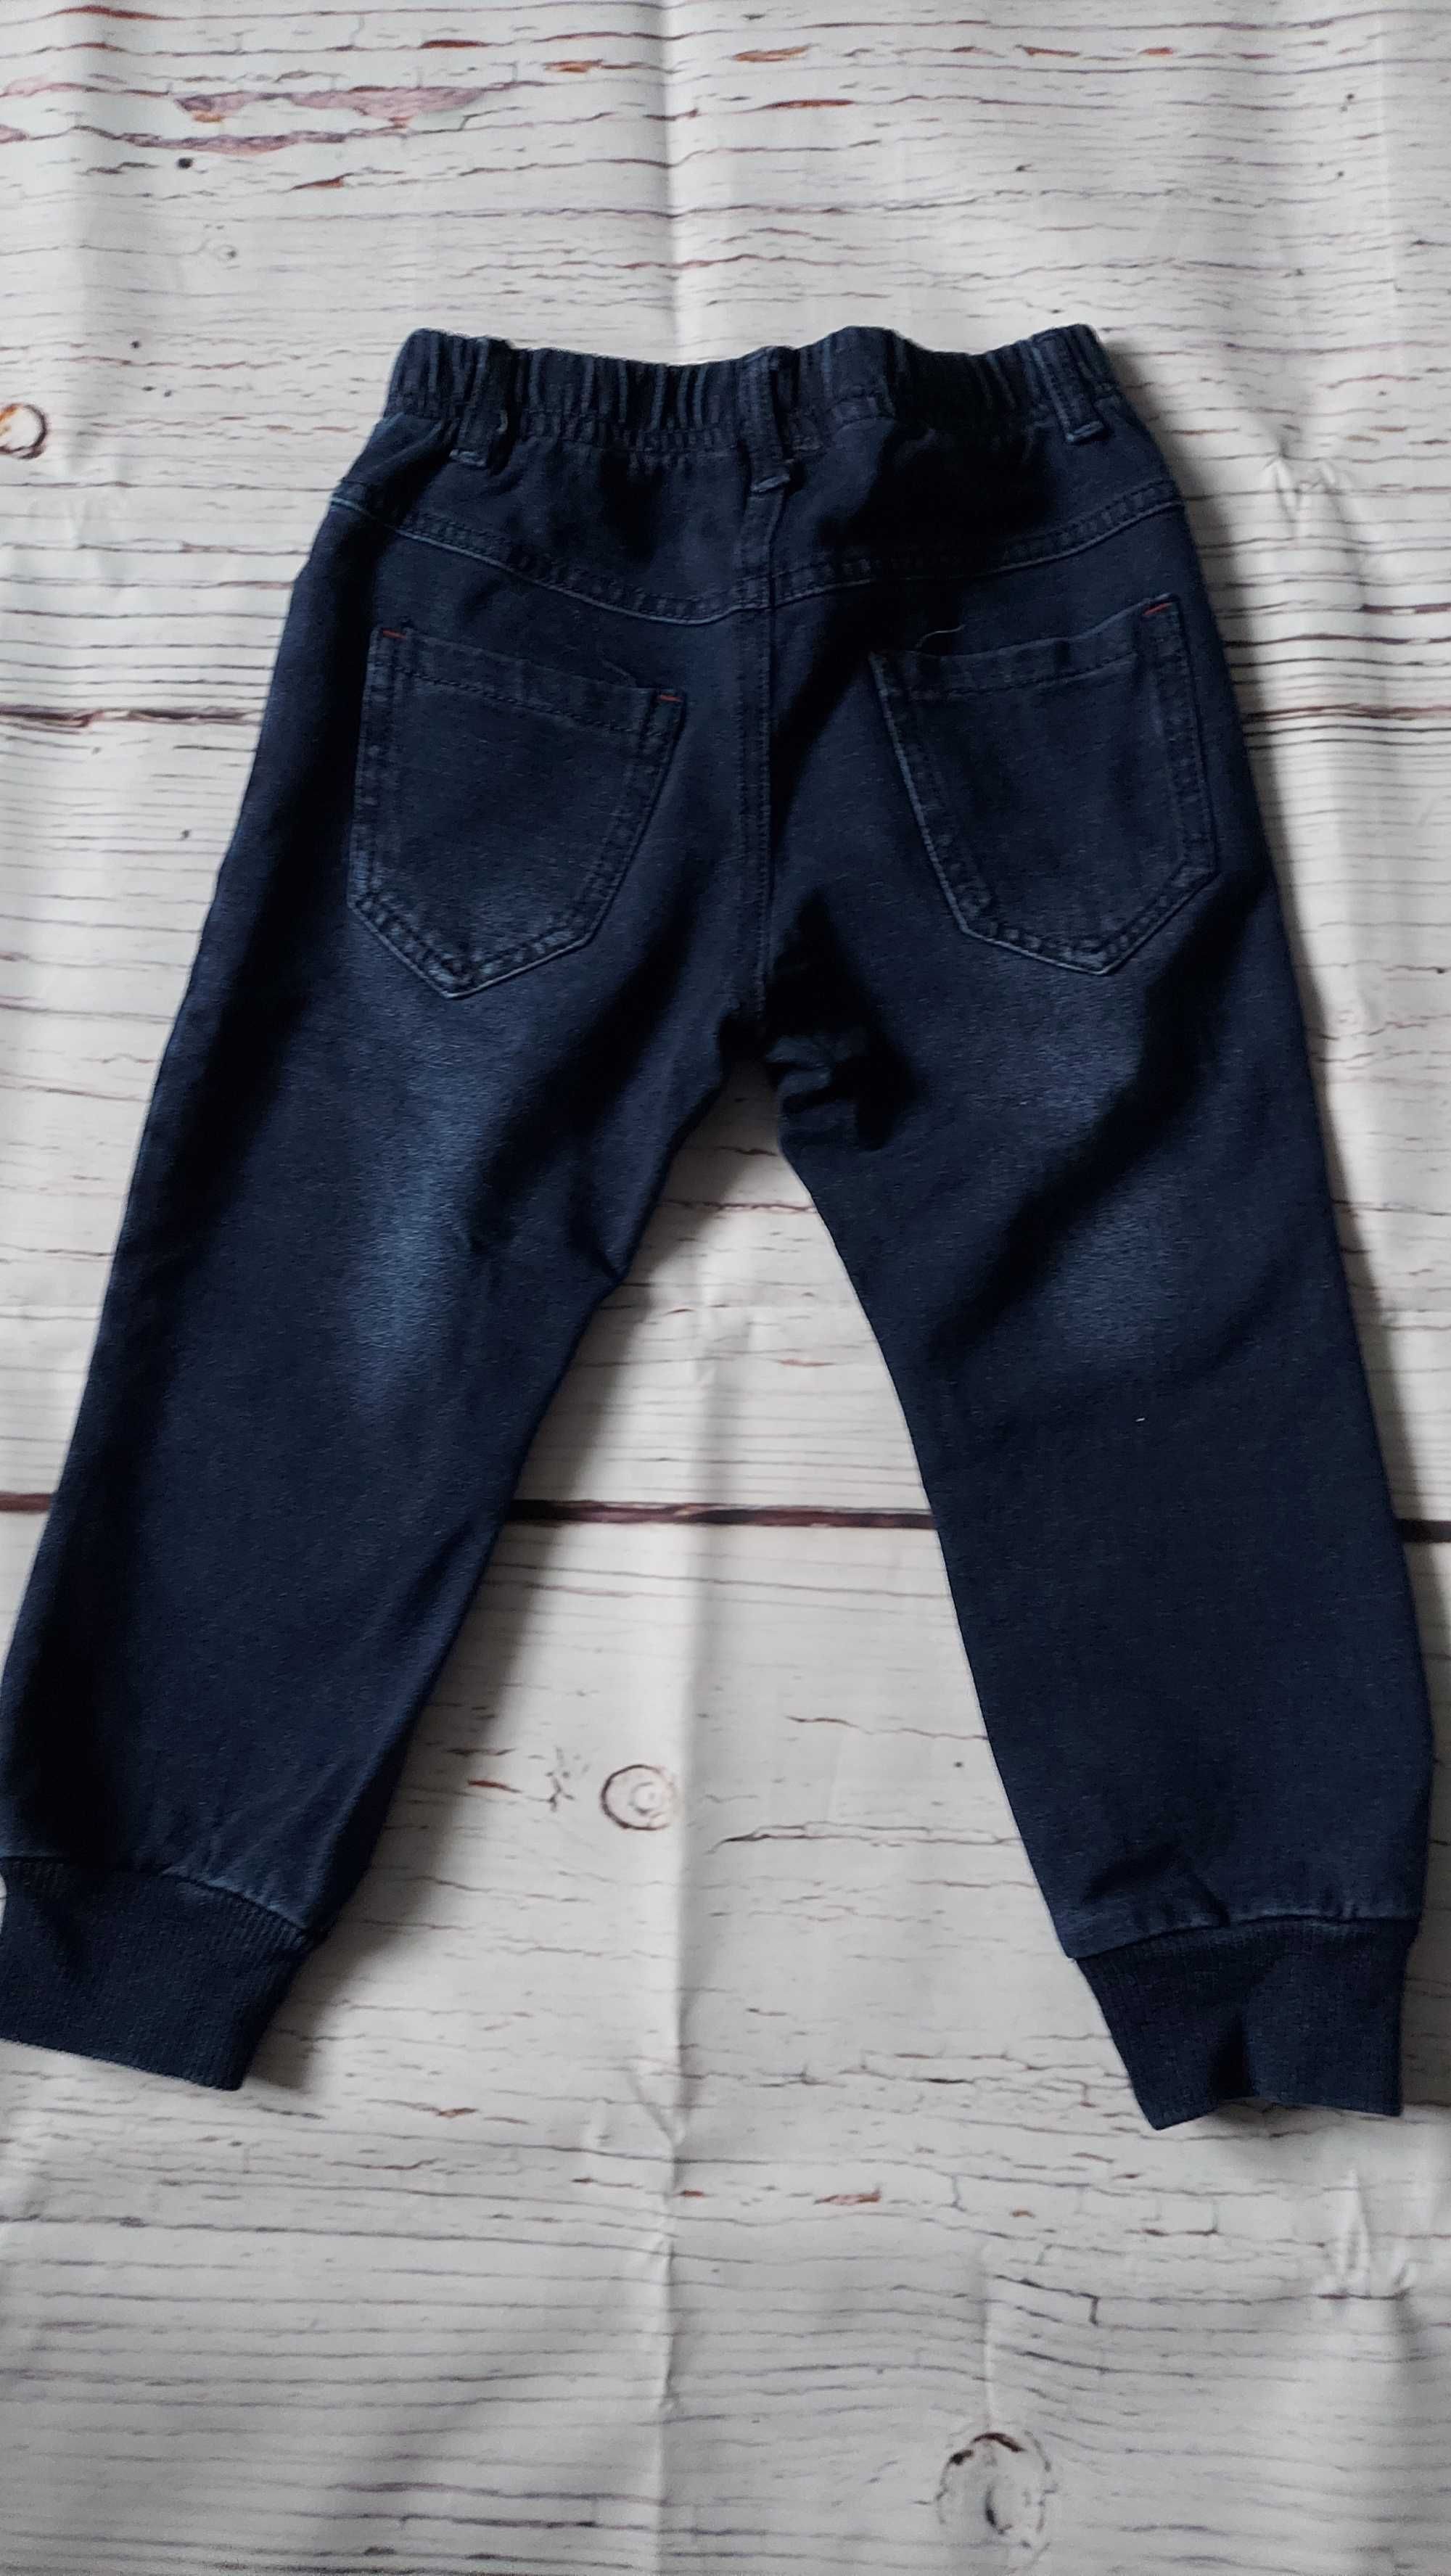 3 pary chłopięcych spodni jeansowych w rozmiarach 92-98